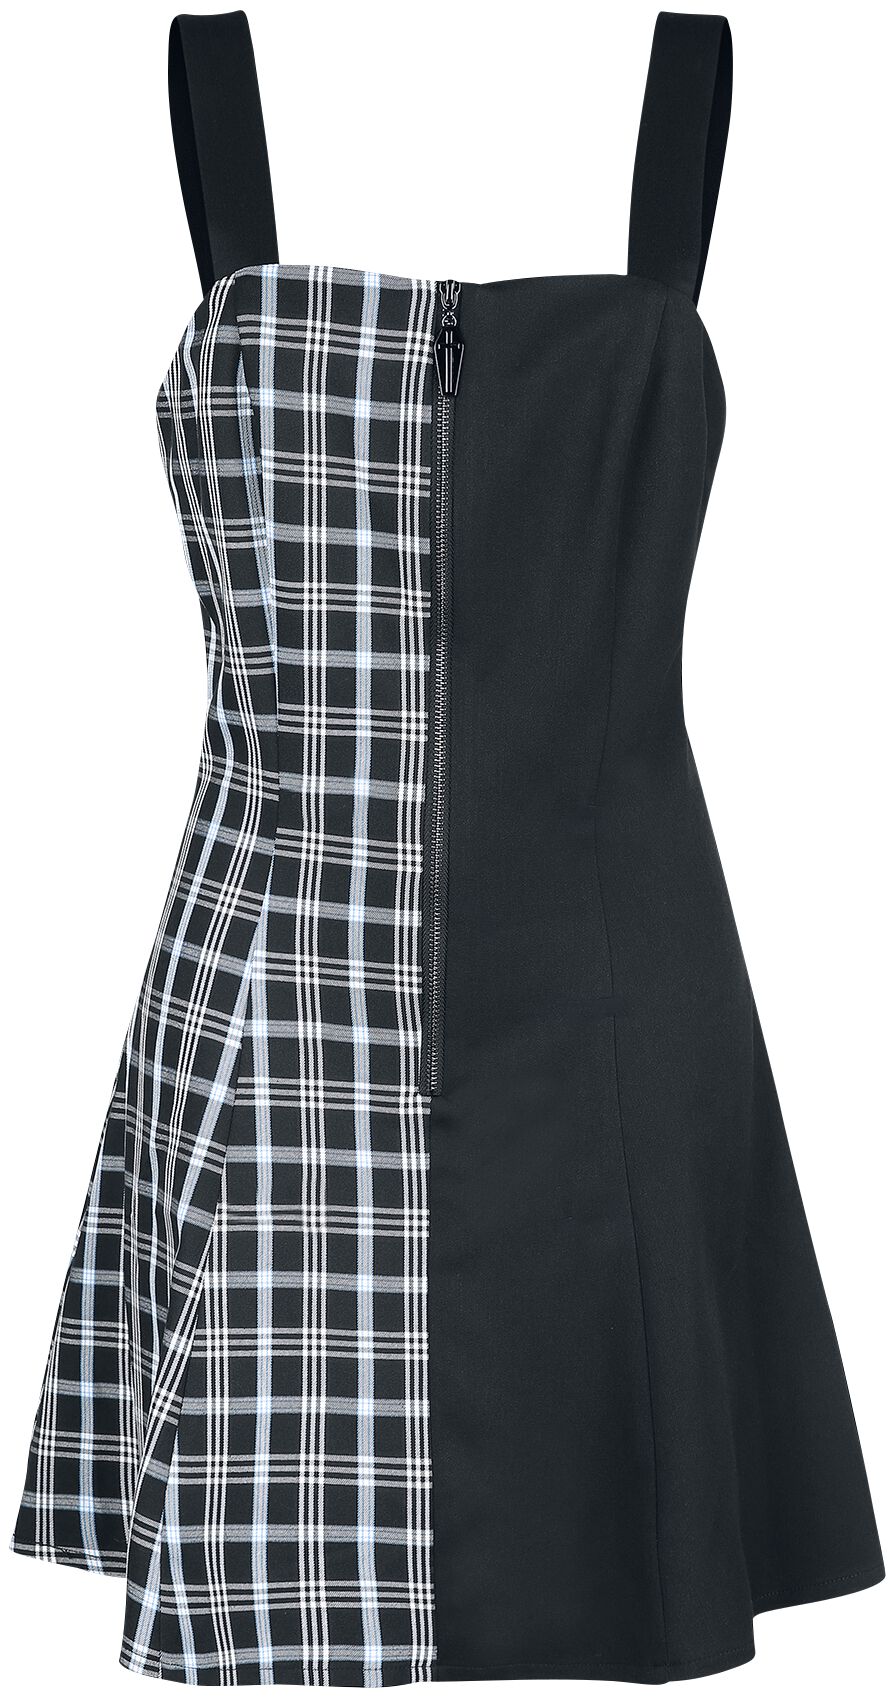 Banned Alternative - Gothic Kurzes Kleid - Death Check Dress - XS bis XXL - für Damen - Größe M - schwarz/blau